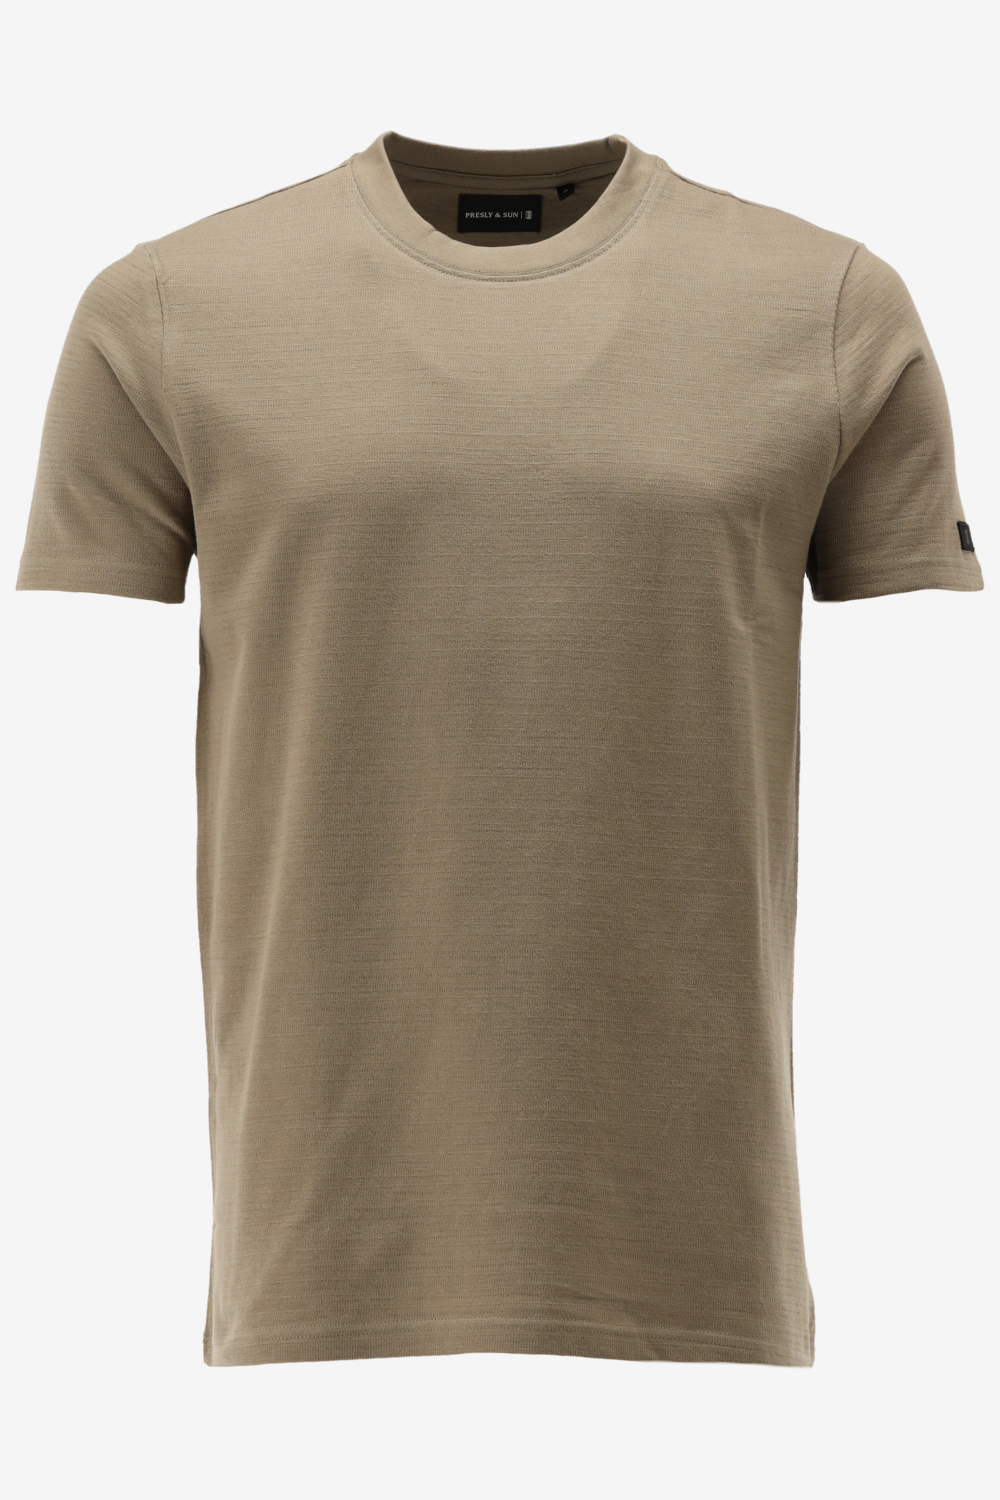 Presly & Sun T-shirt SYLVESTER